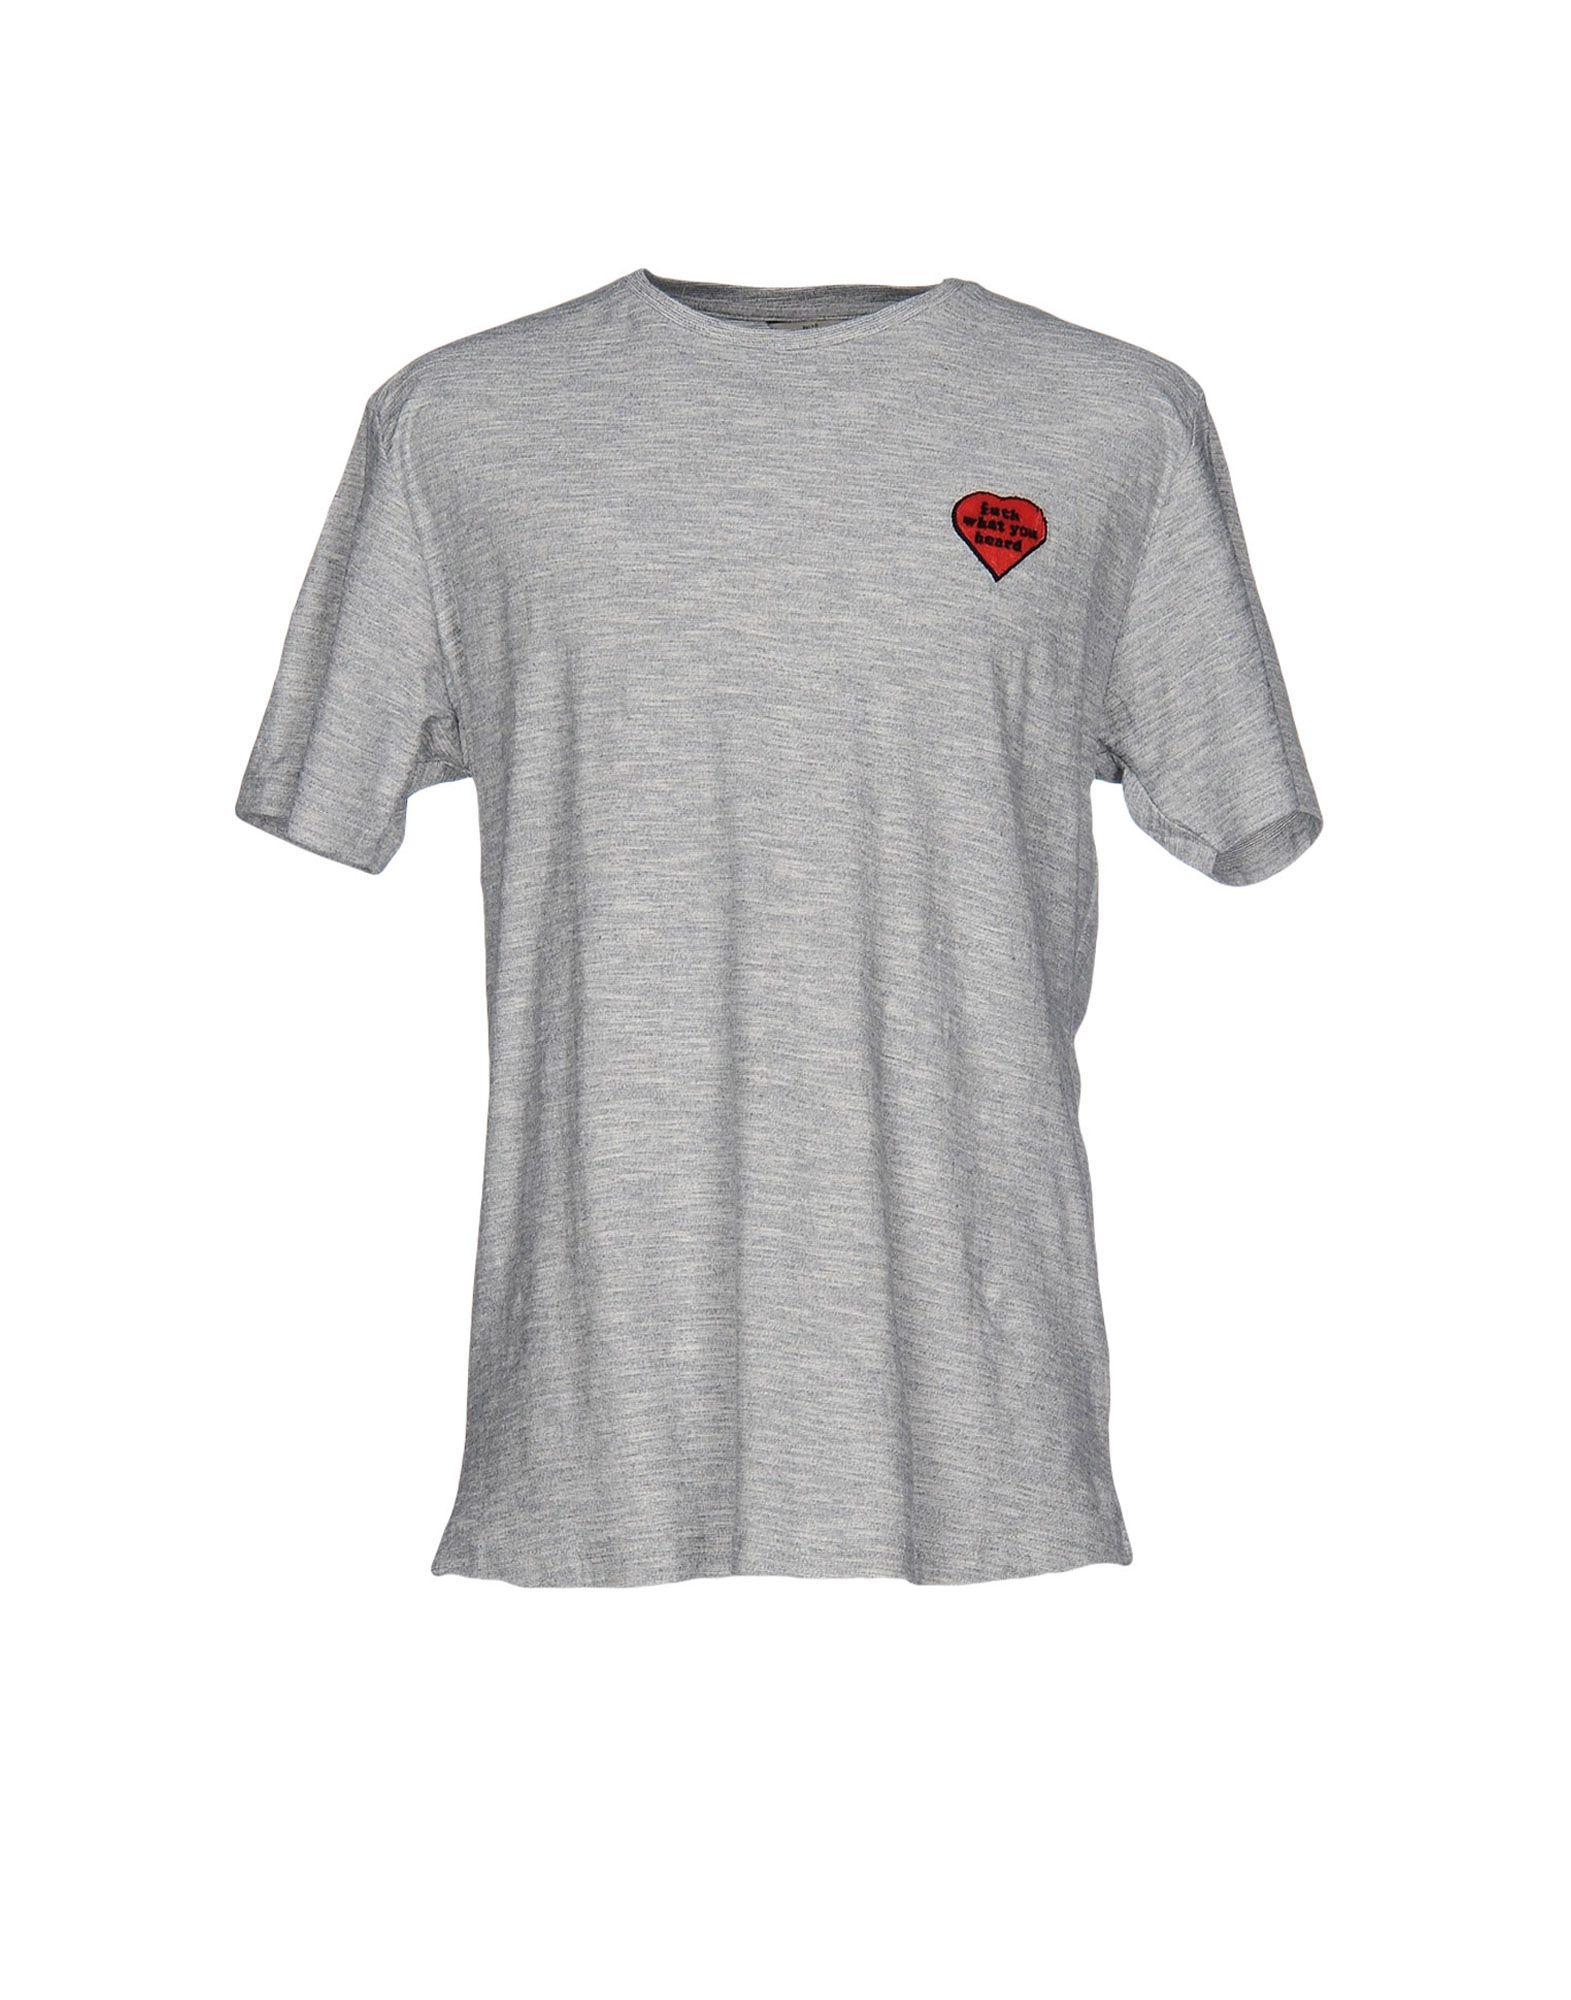 RVLT Cotton T-shirt in Light Grey (Gray) for Men - Lyst